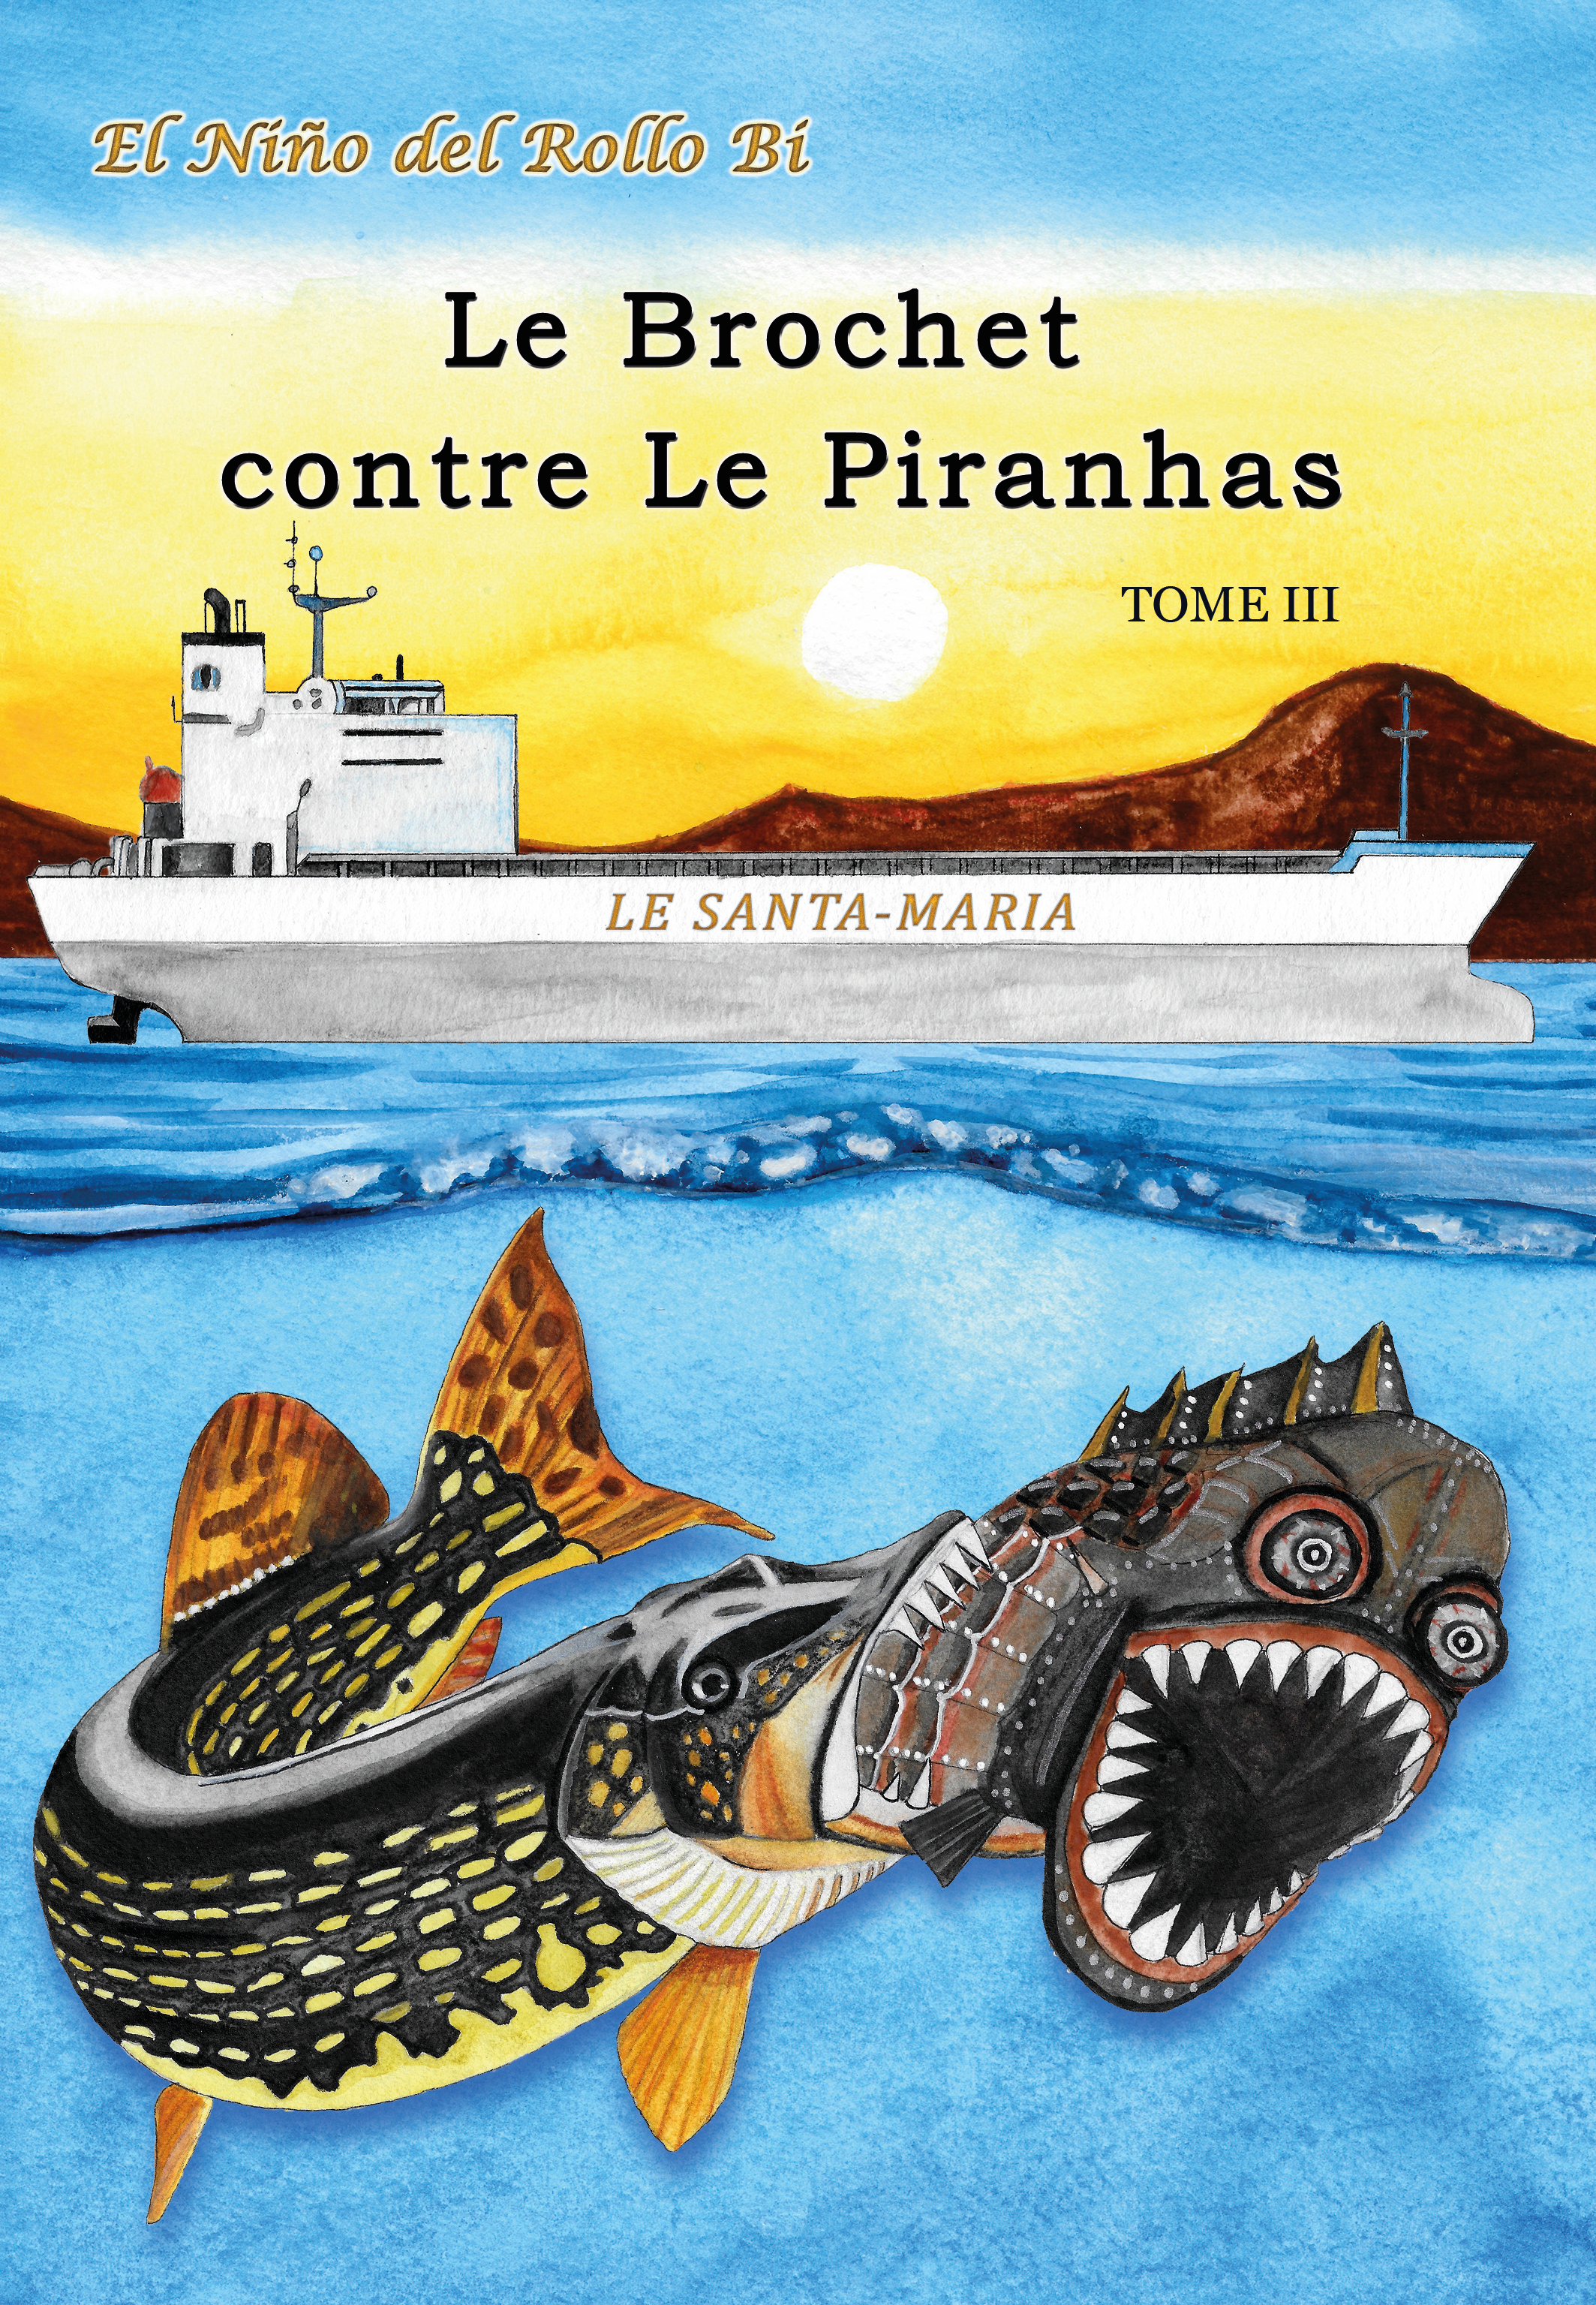 Le Brochet contre Le Piranhas tome III